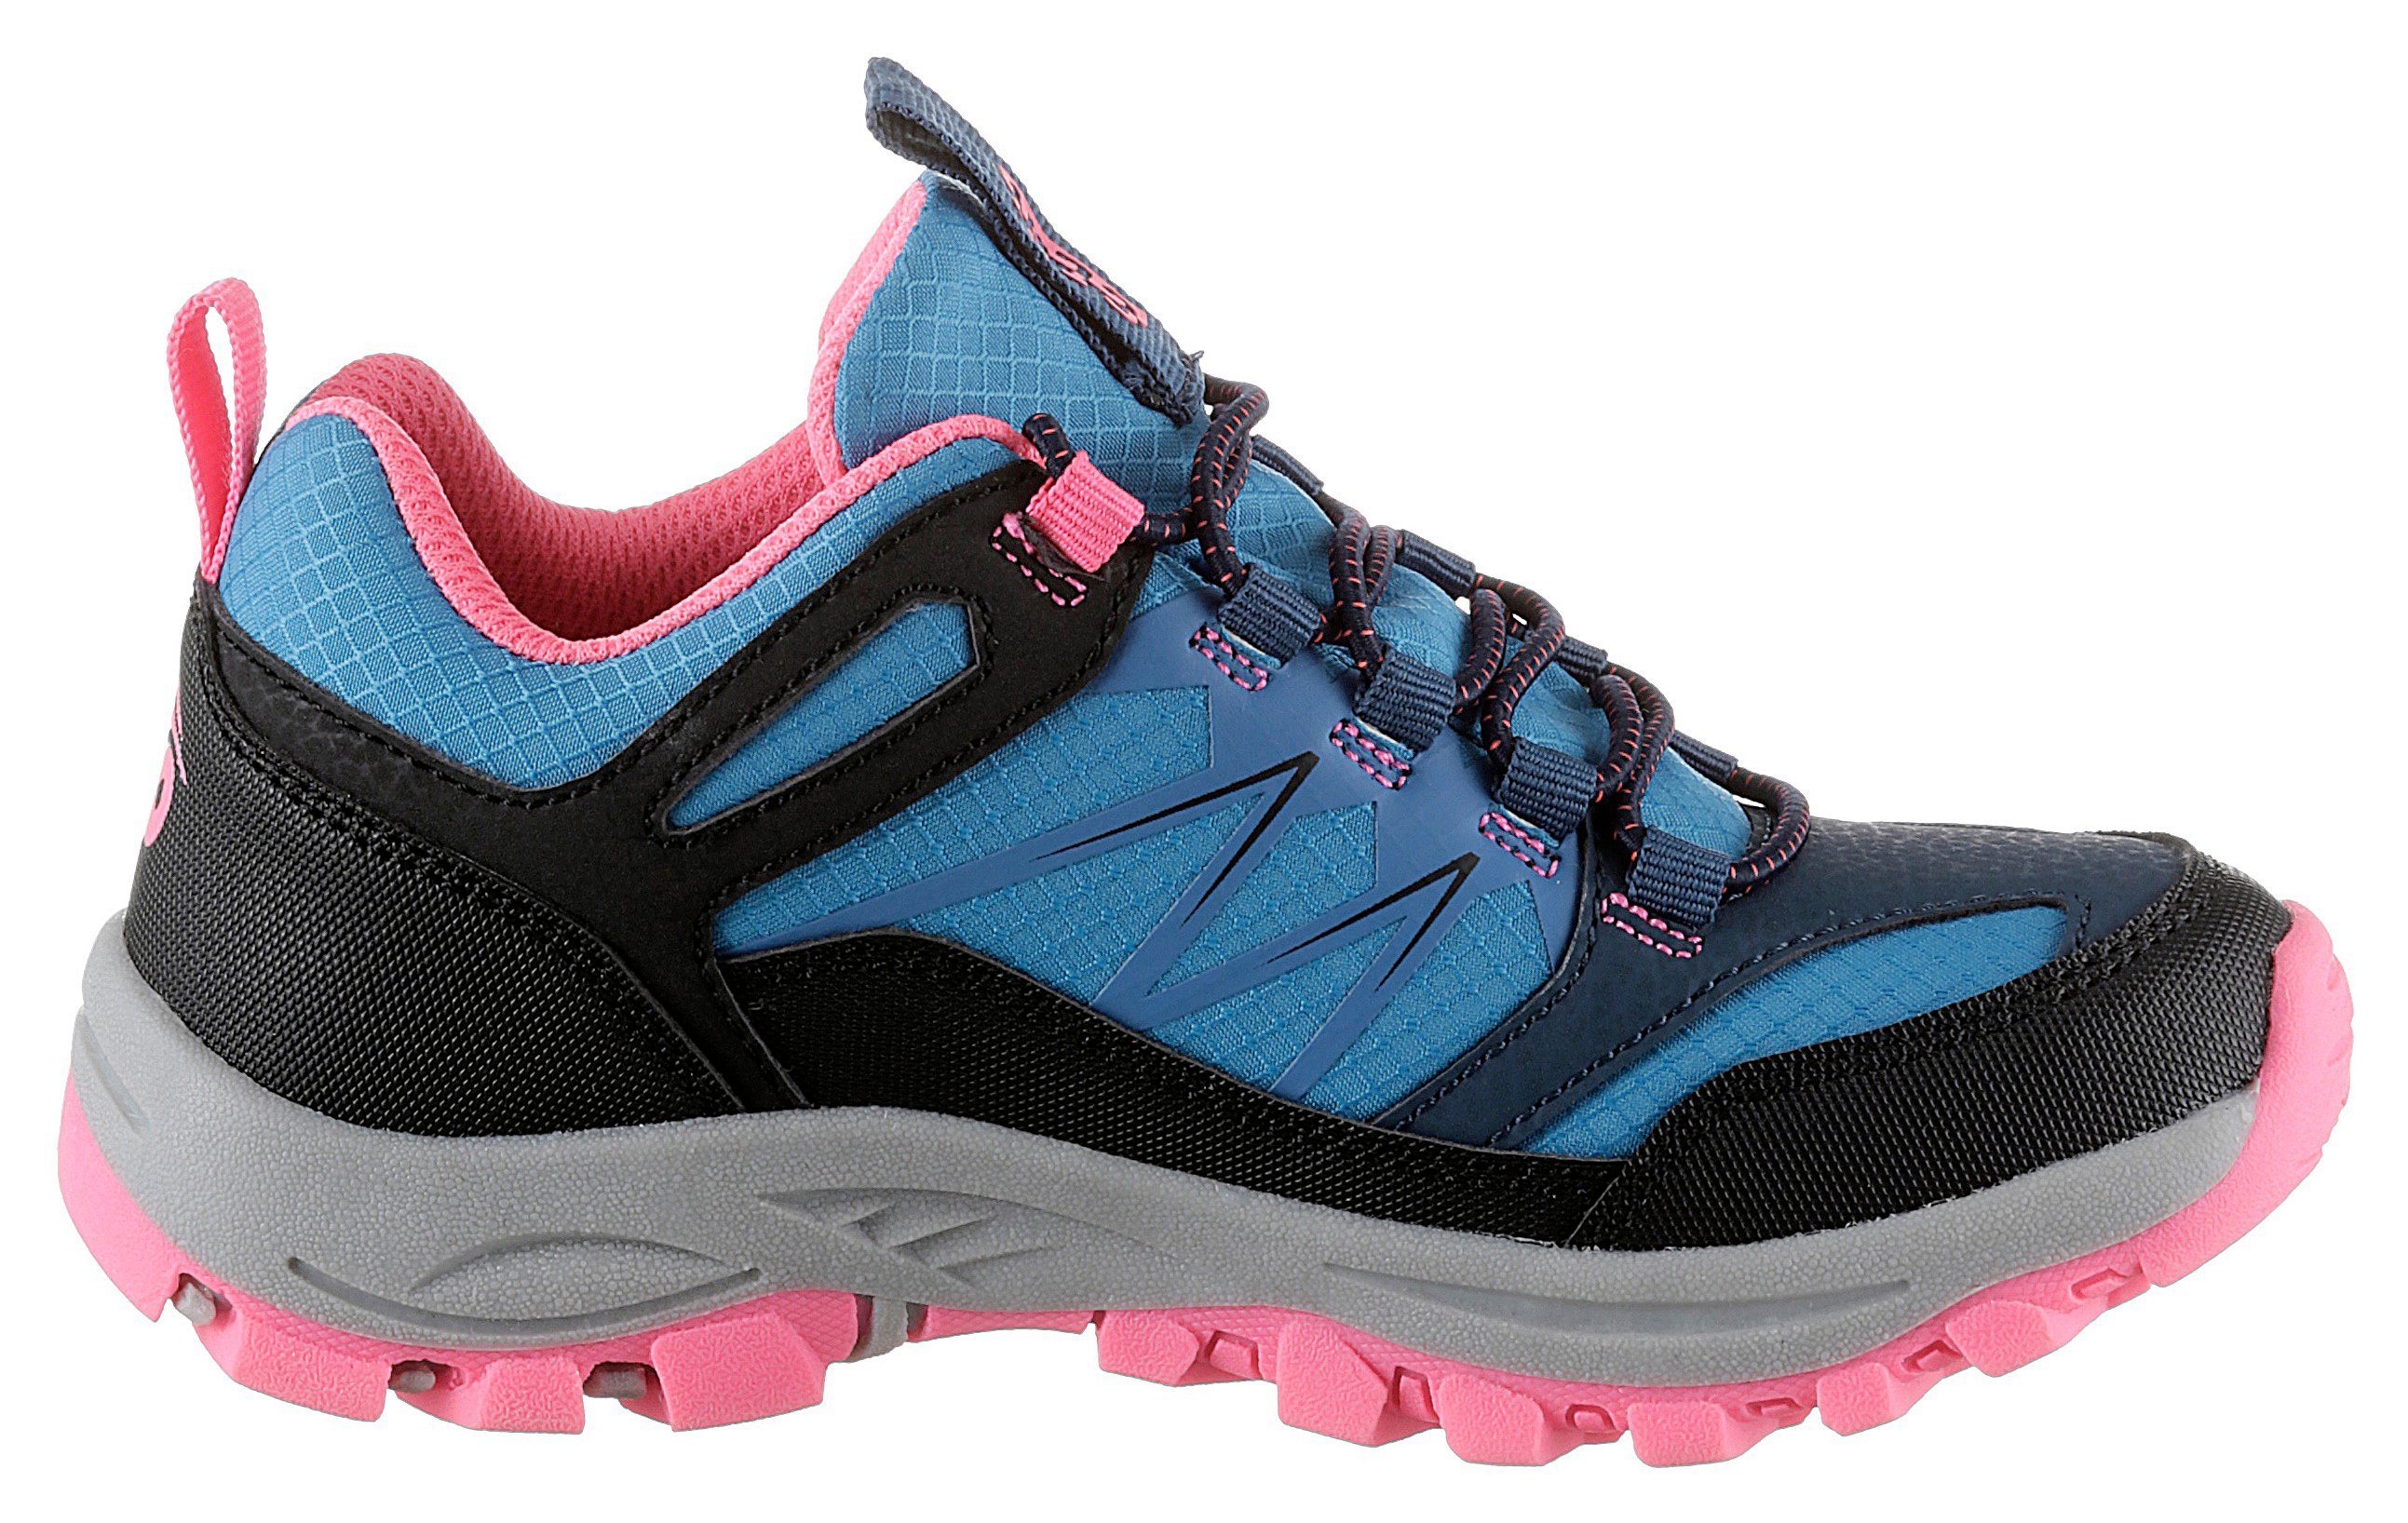 Sneaker by Schnellverschluss mit Gerli Slip-On Dockers blau-schwarz-pink